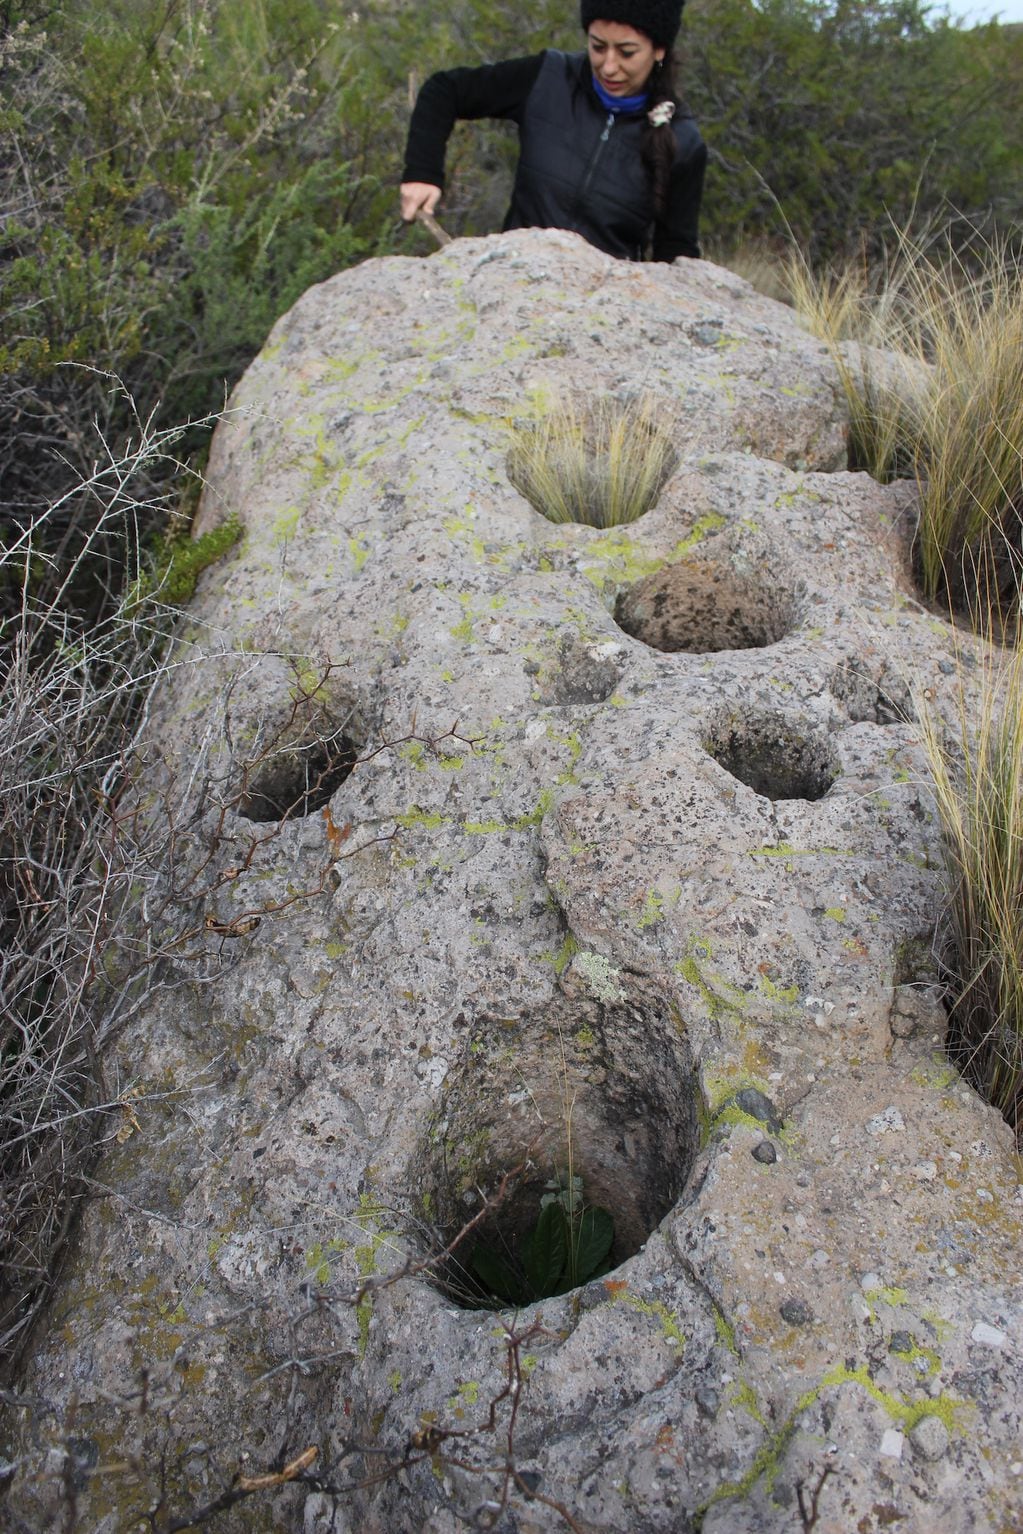 Vista de una roca (ignimbrita toba volcánica) con múltiples cavidades profundas, en el arroyo Papagayos, Paso de las Carretas.  Foto: Laura Steele.